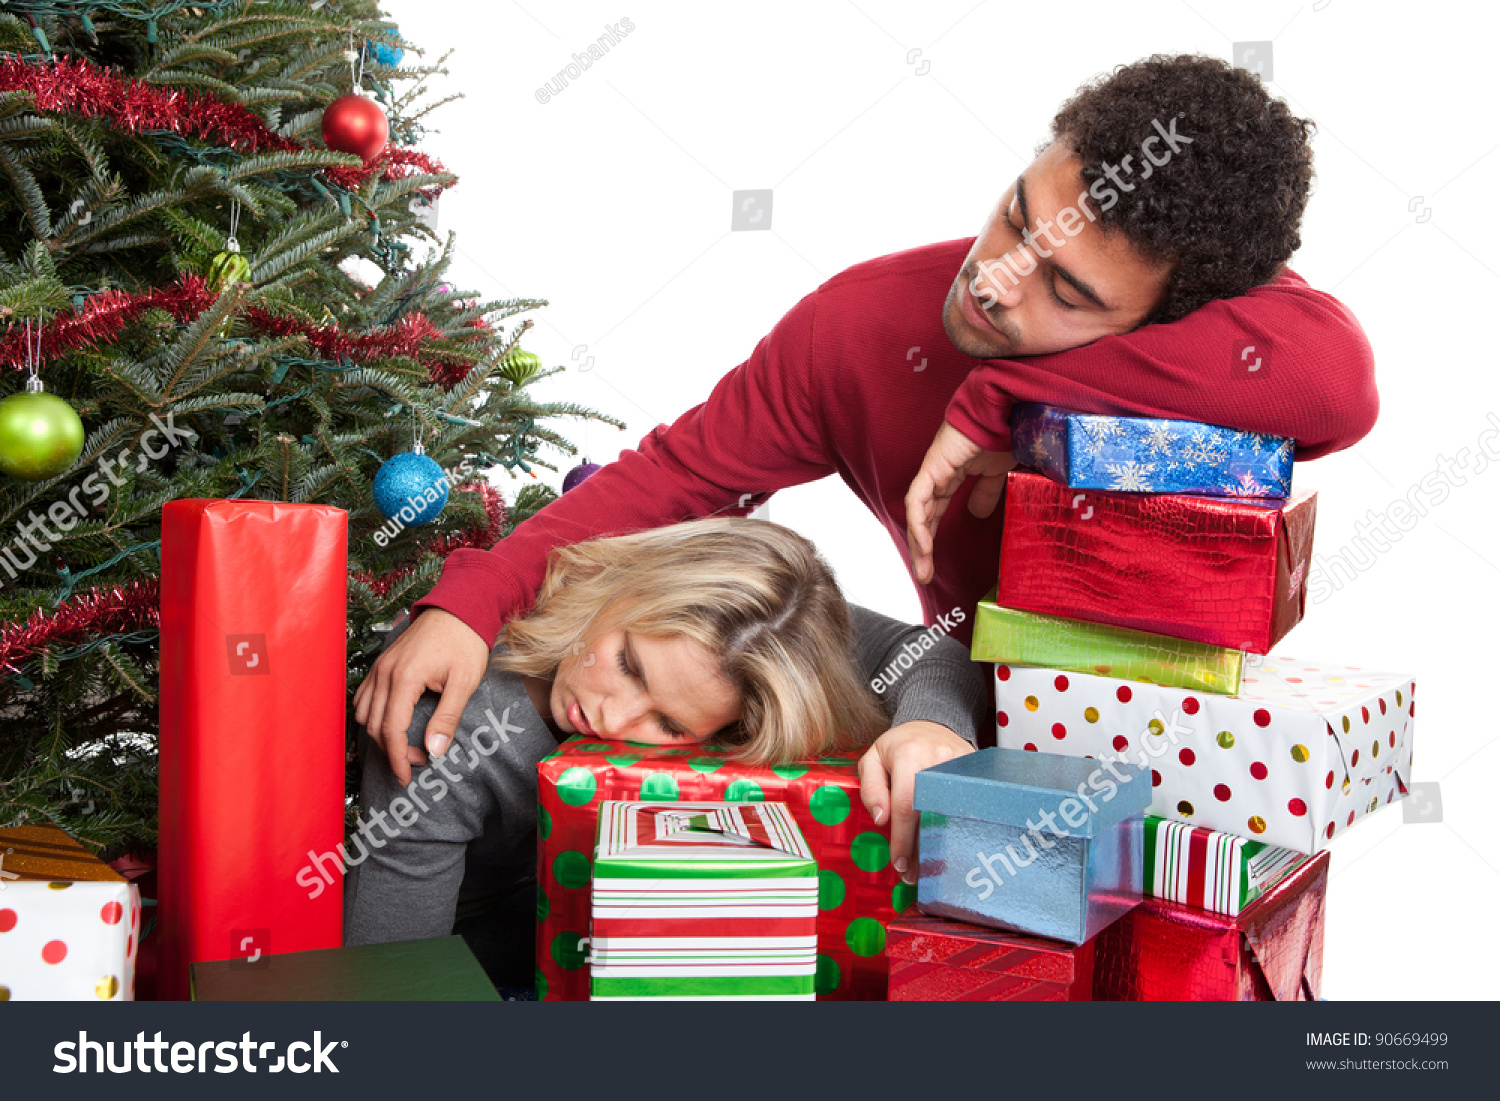 Exhausted Couple Sleeping On Christmas Presents Stock Photo 90669499